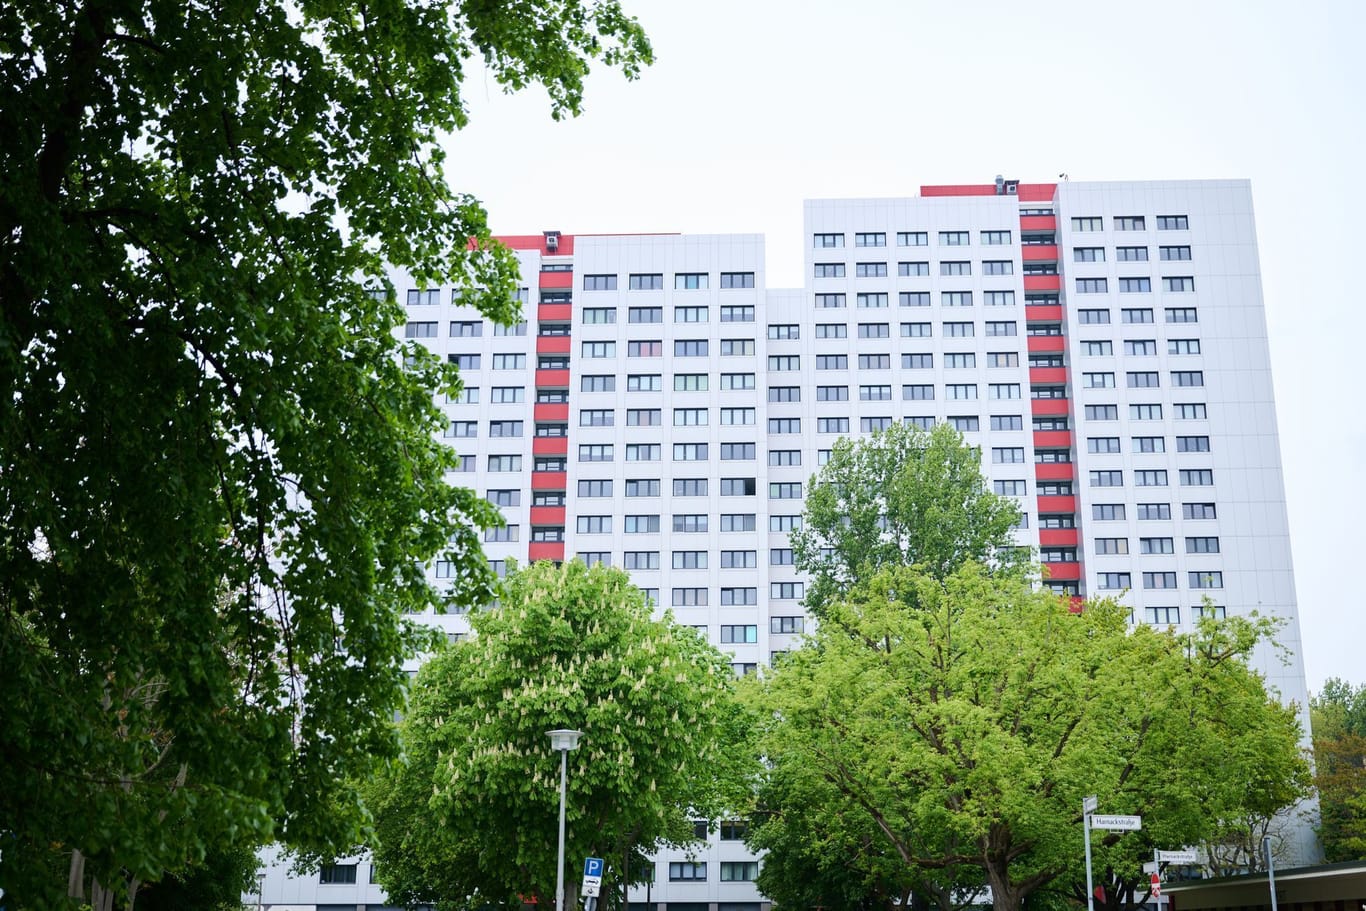 Wohnhäuser von Vonovia in Berlin